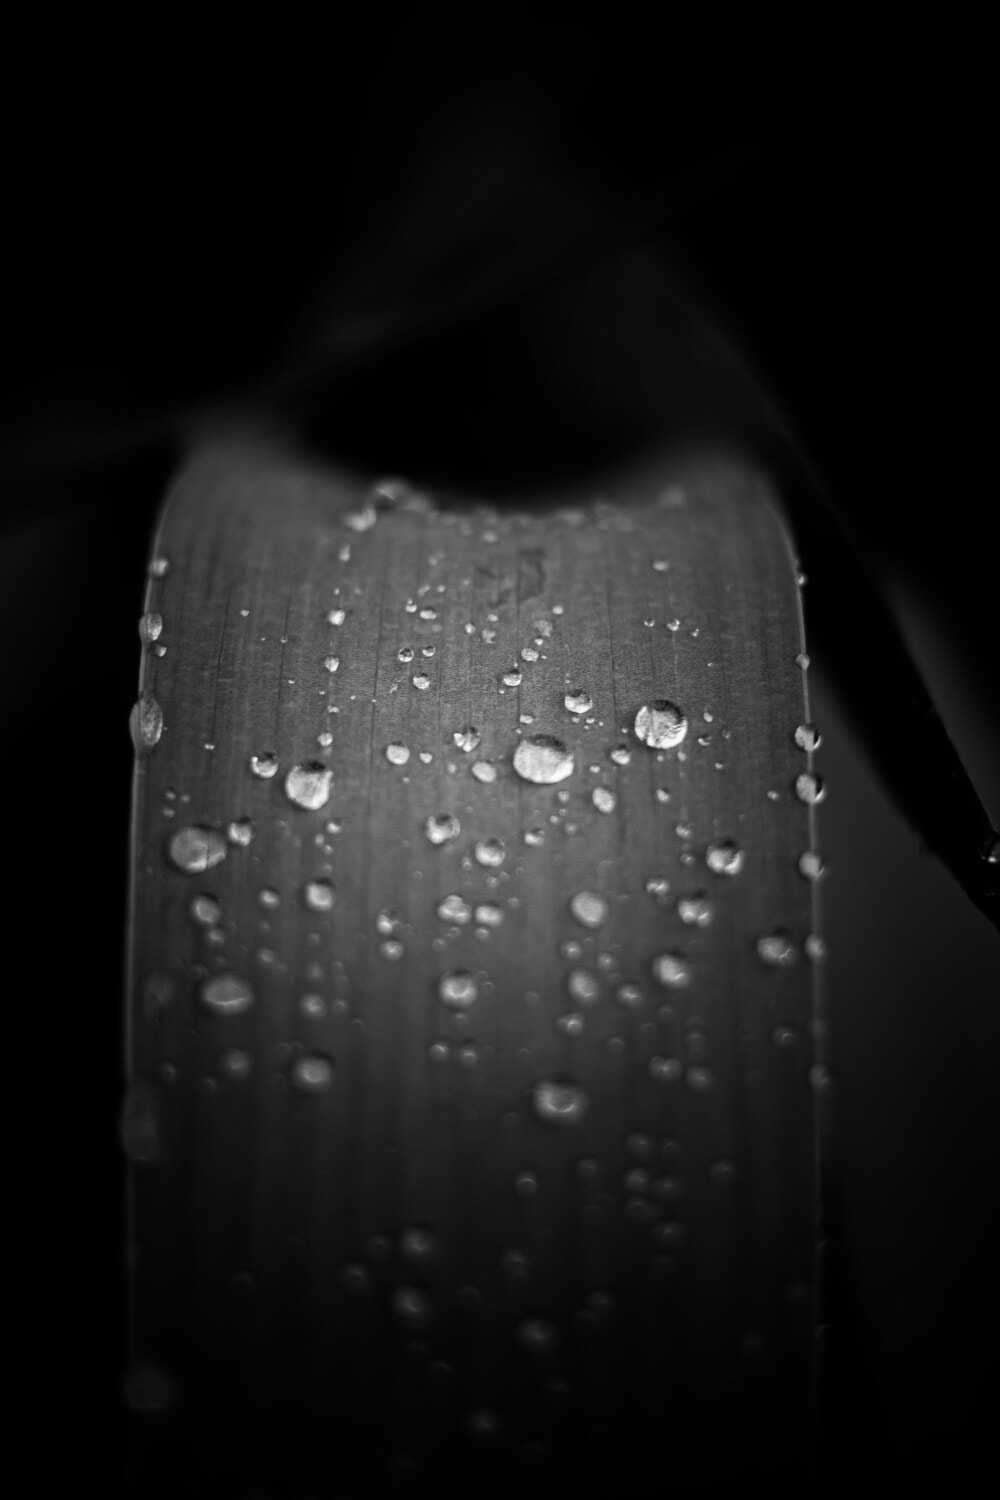 Regentropfen, Feuchtigkeit, Tau, Blatt, schwarz und weiß, Wassertropfen, Kraut, aus nächster Nähe, abstrakt, Monochrom